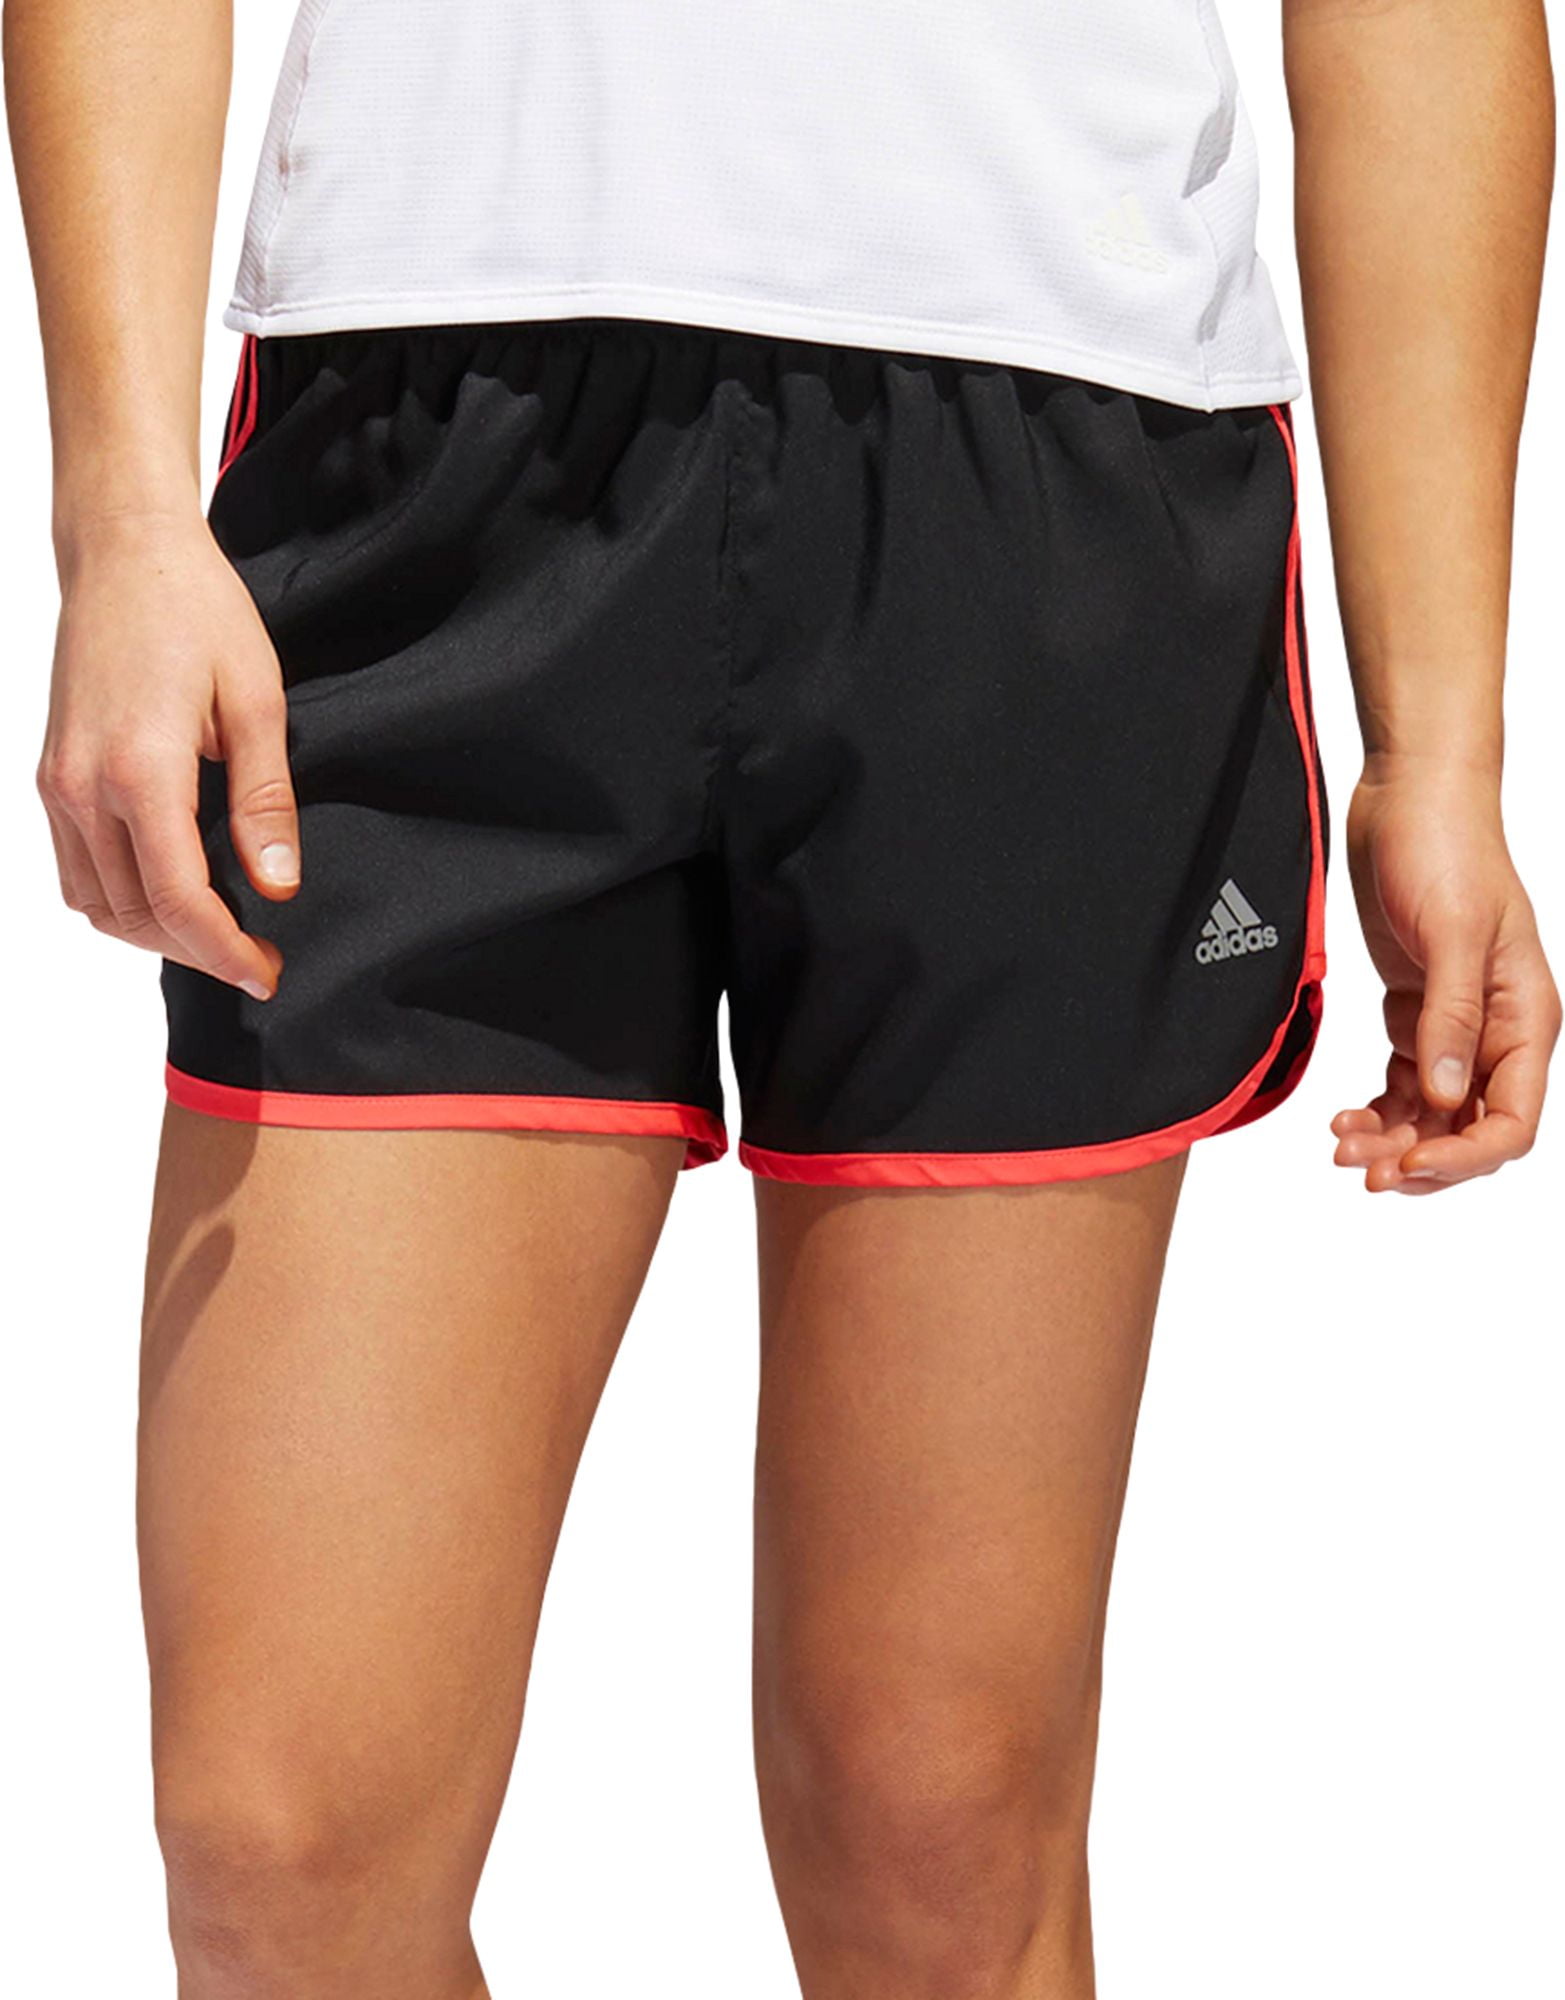 marathon 20 adidas shorts